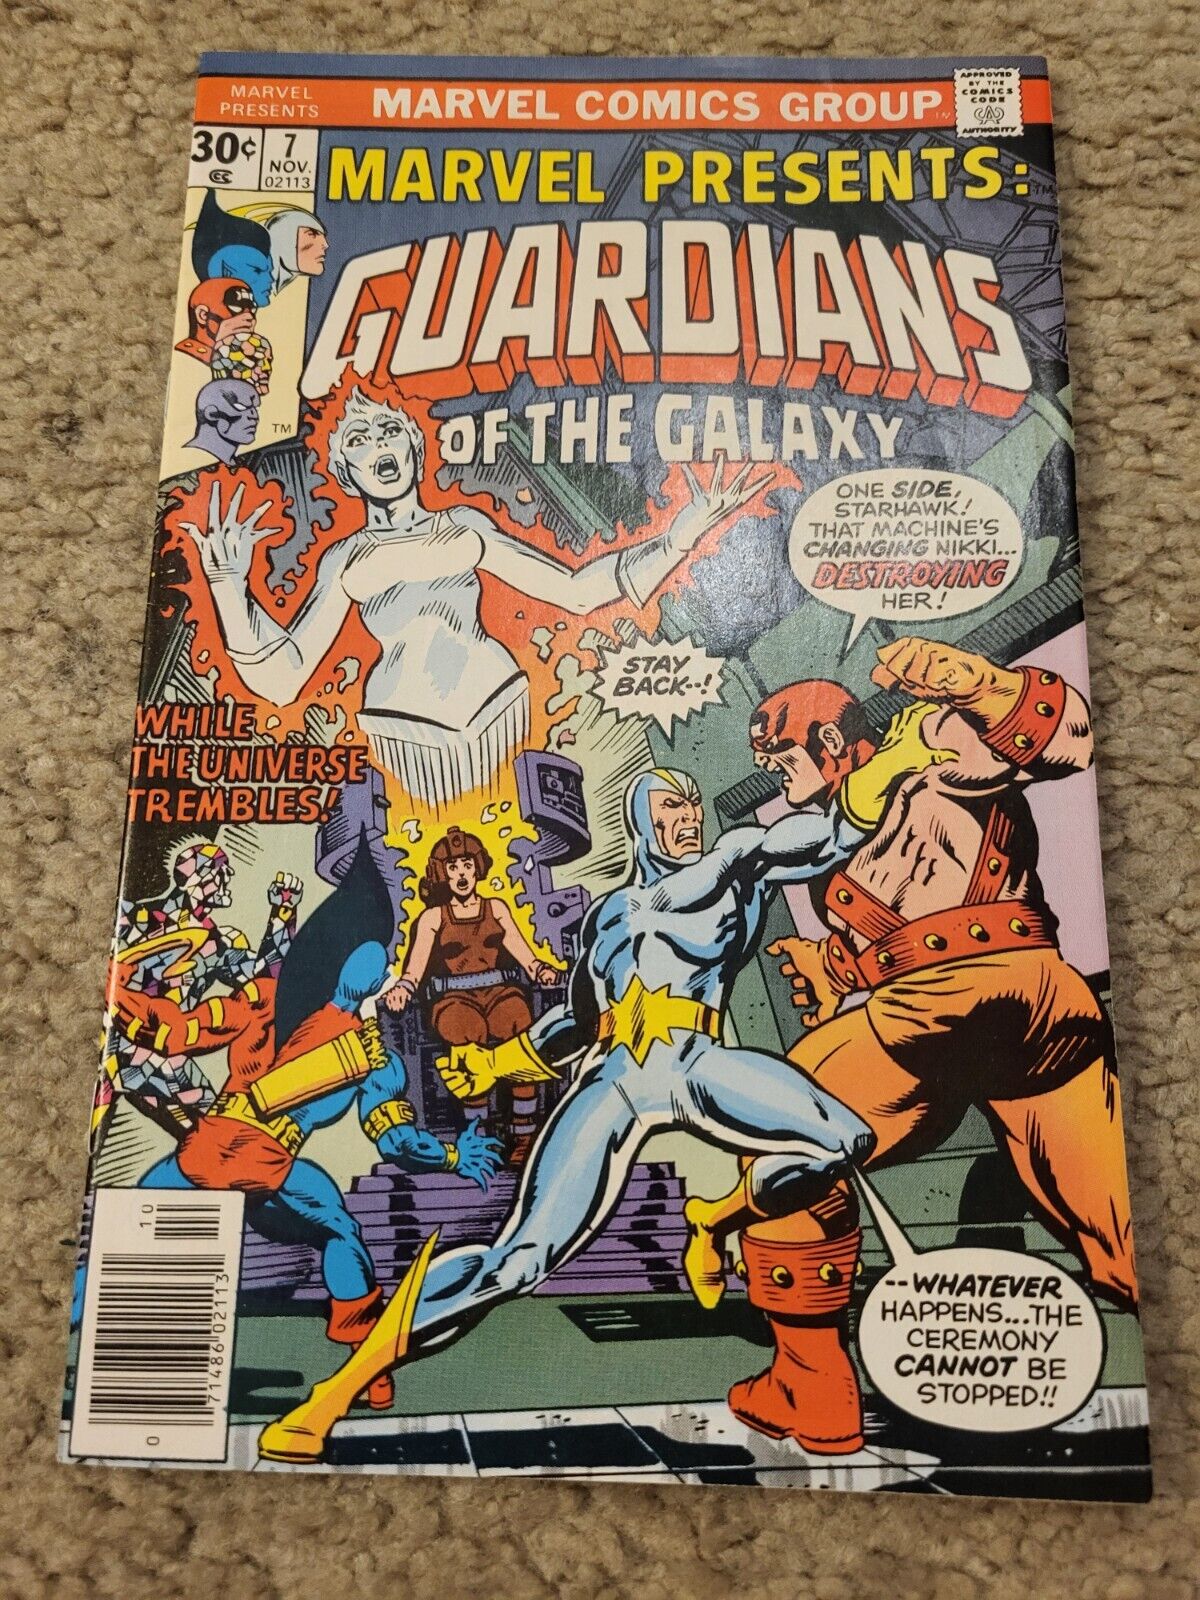 Marvel Presents: 7 GUARDIANS OF THE GALAXY Marvel Comics lot 1976 HIGH GRADE